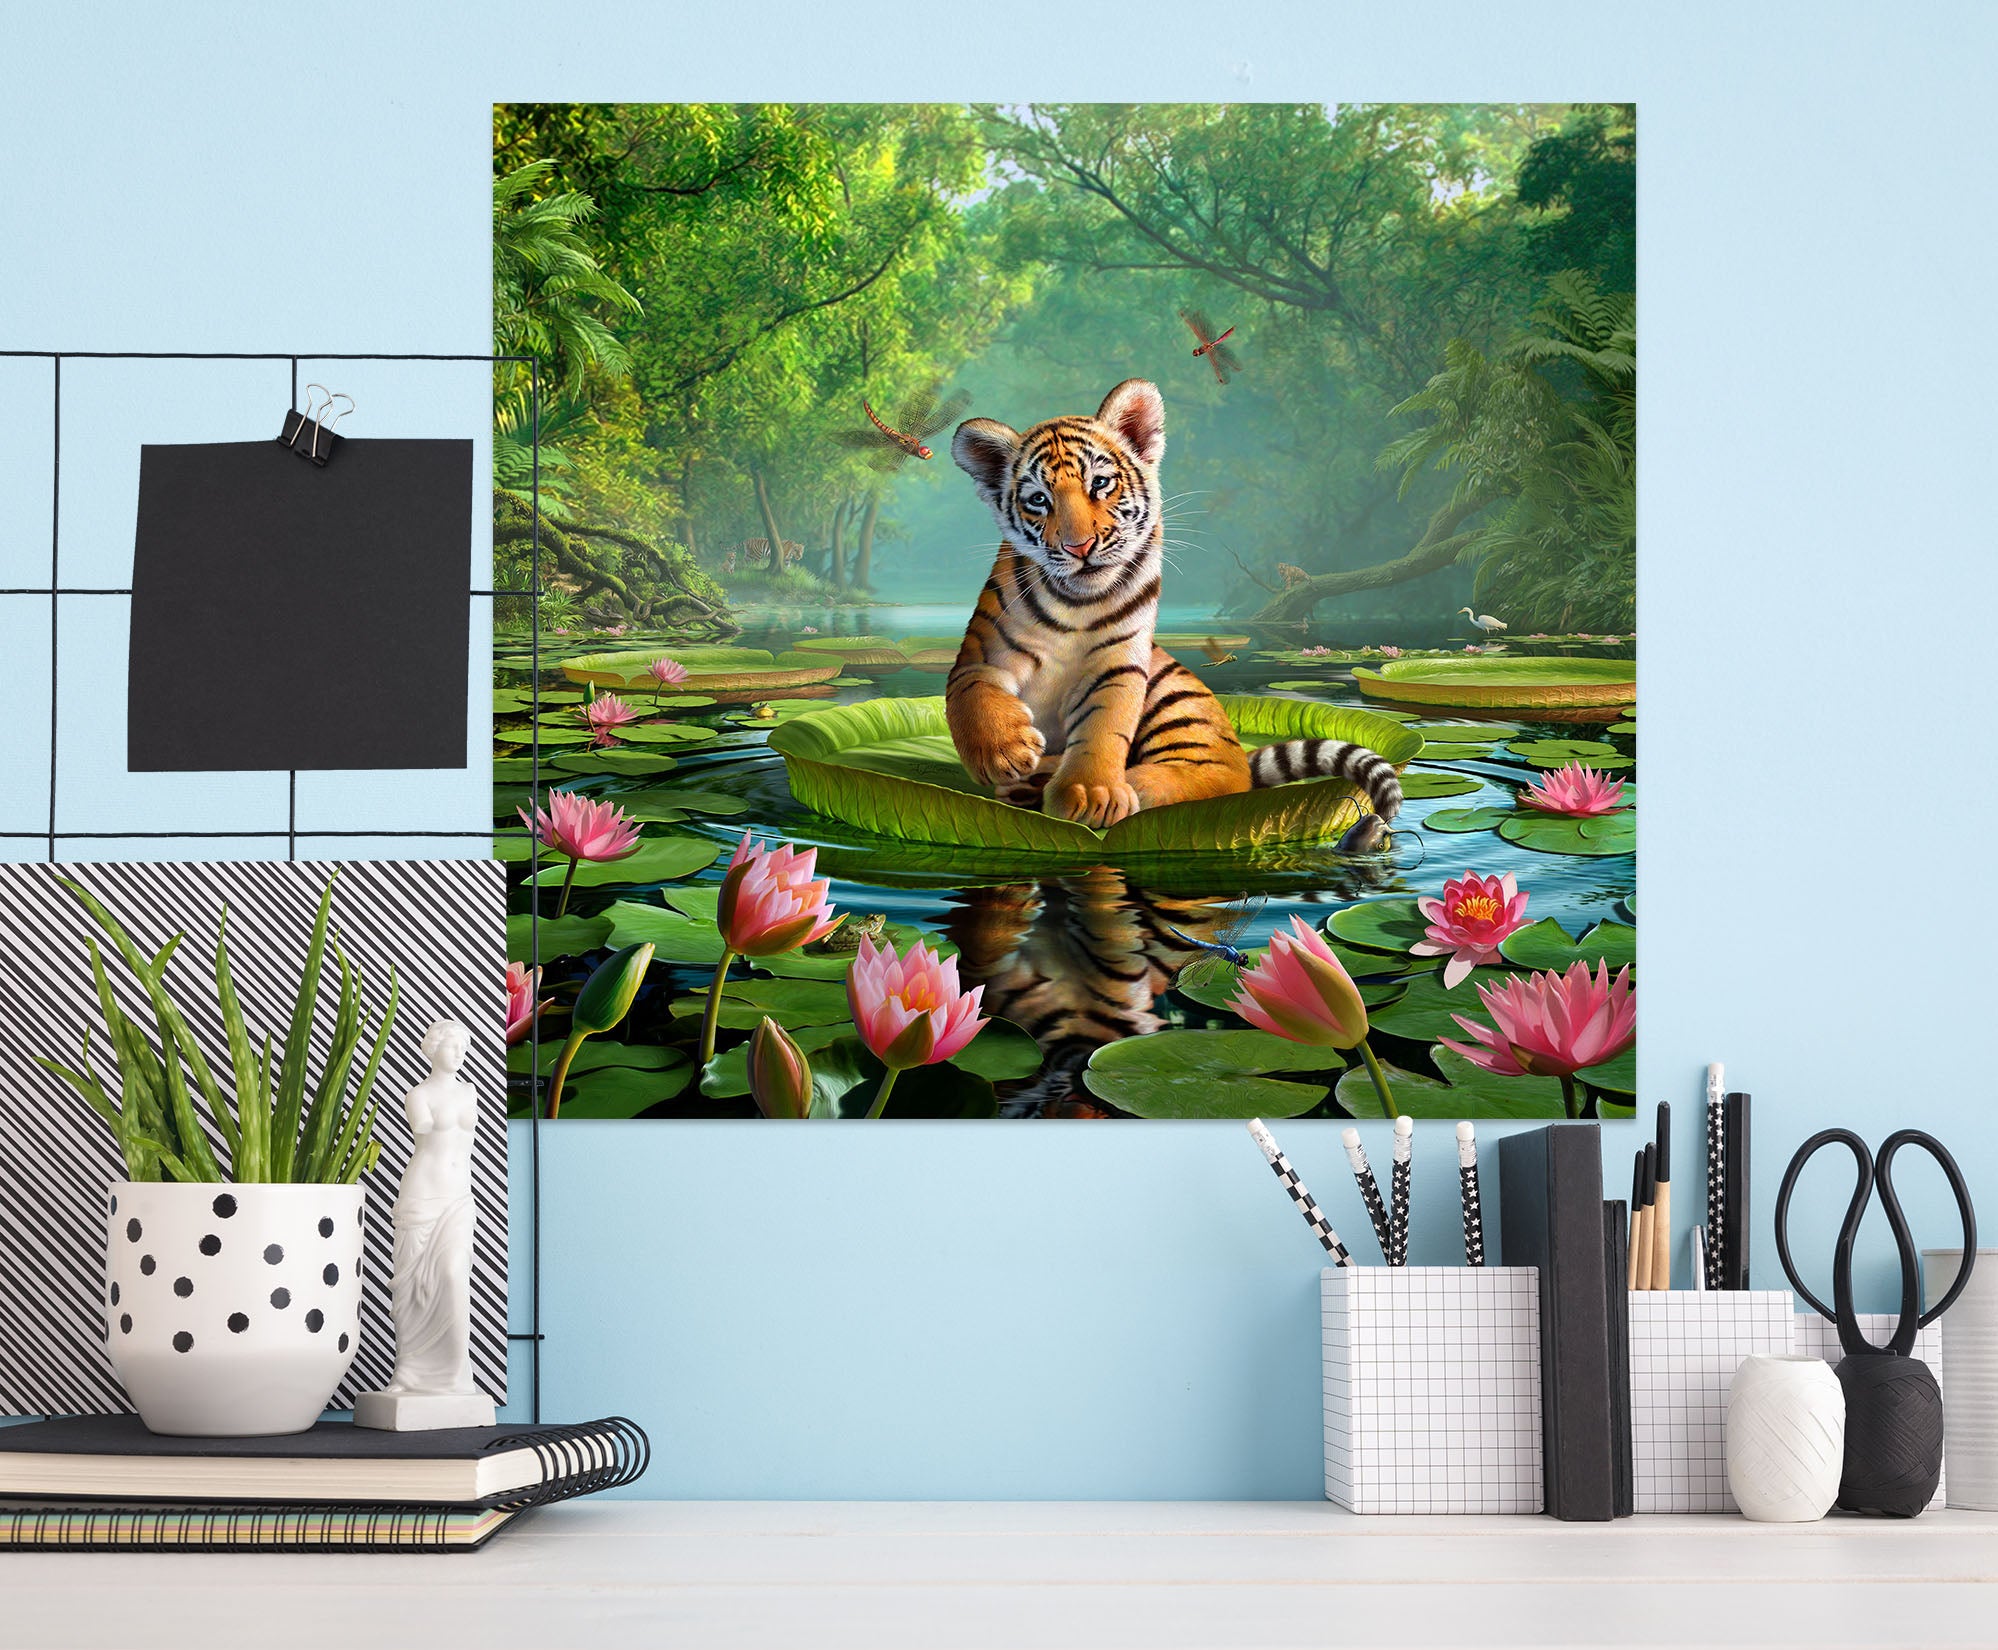 3D Tiger Lily 014 Jerry LoFaro Wall Sticker